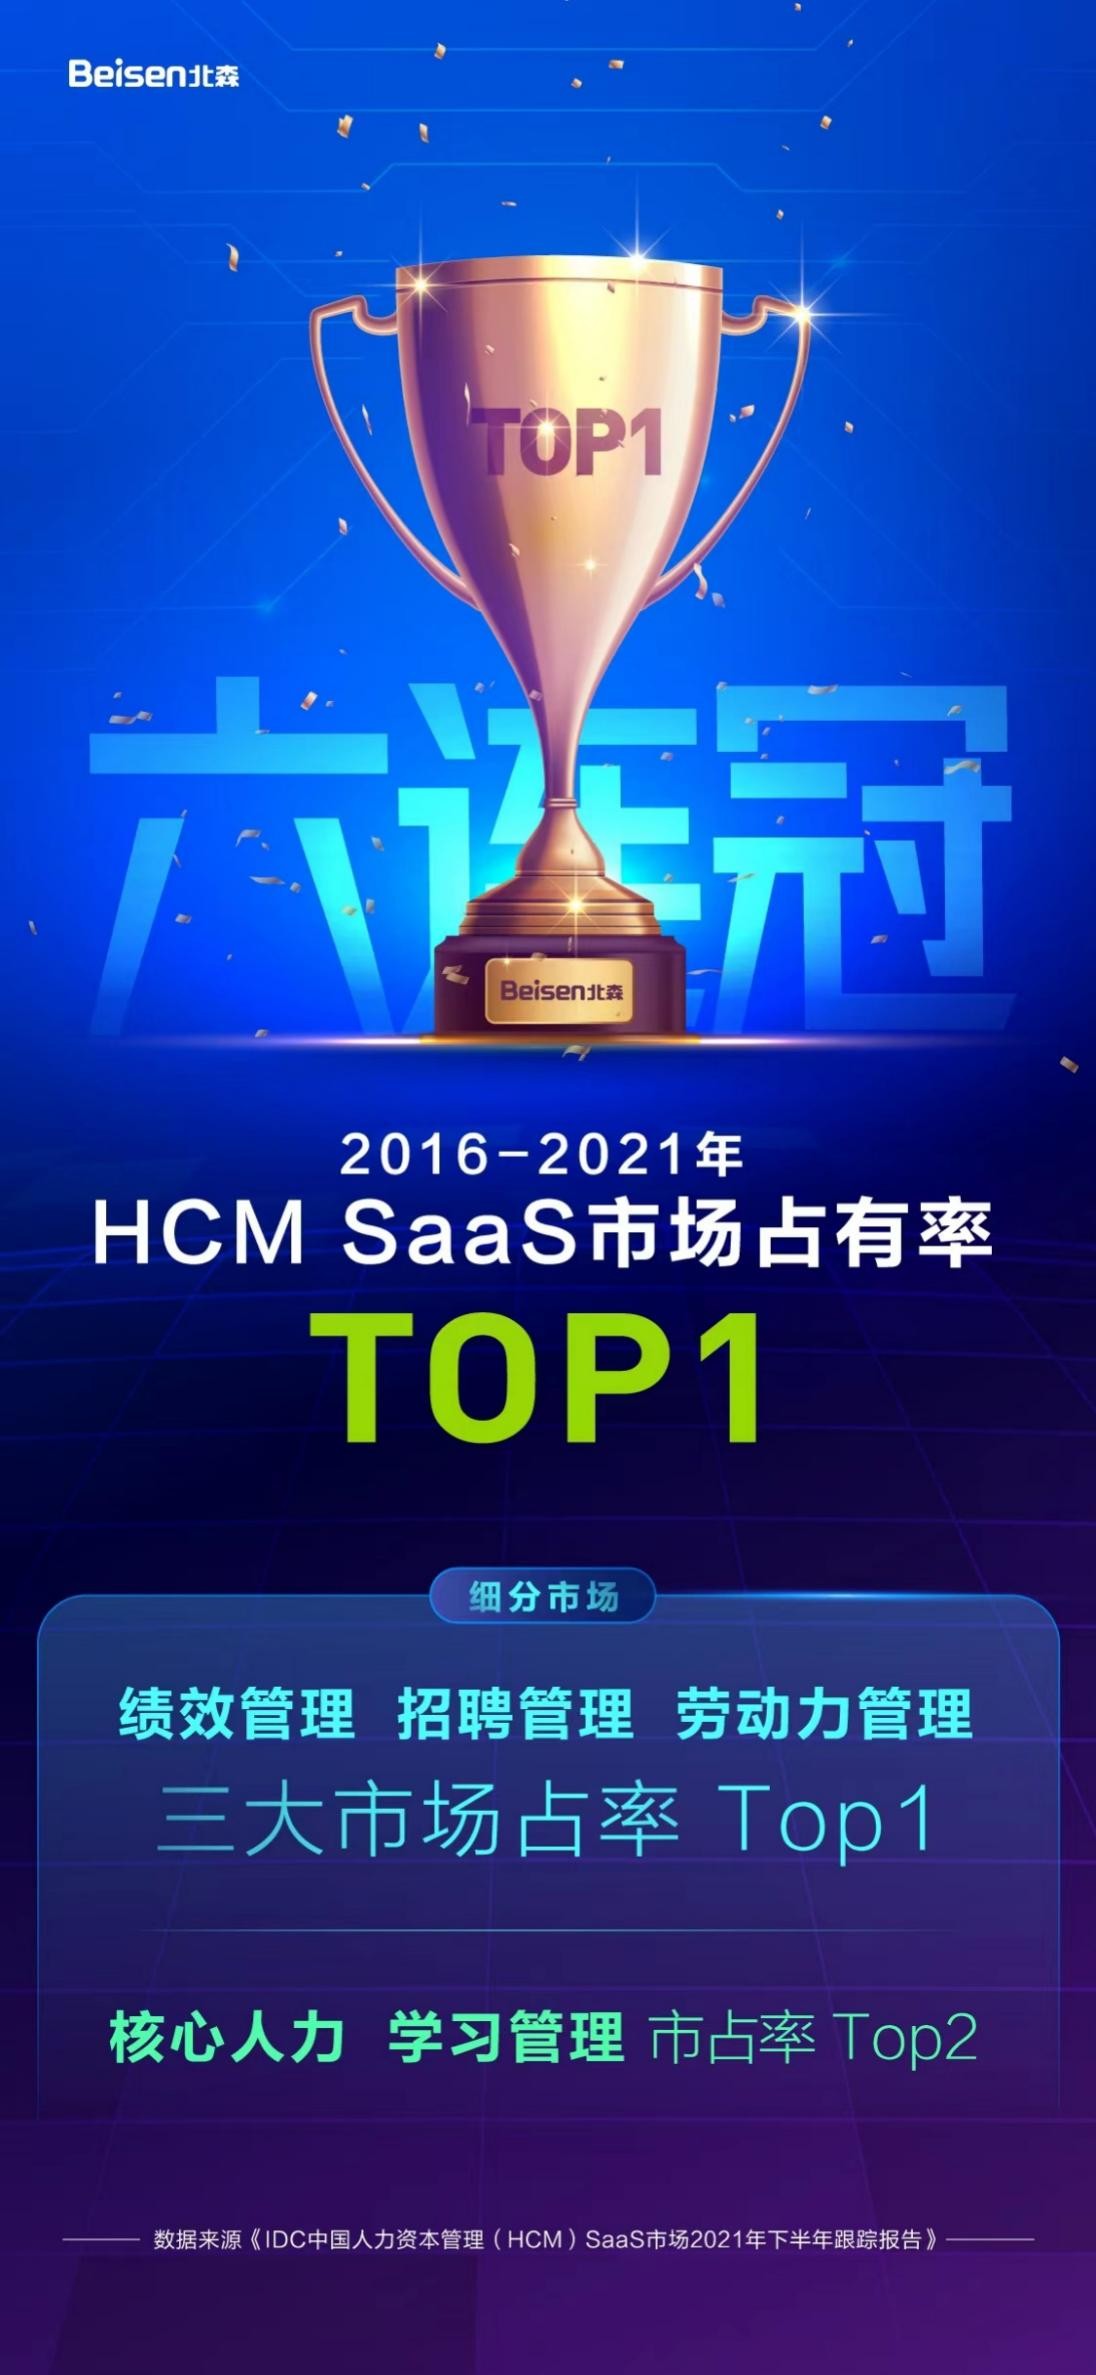 北森6年蝉联中国HCM SaaS市场占有率第一